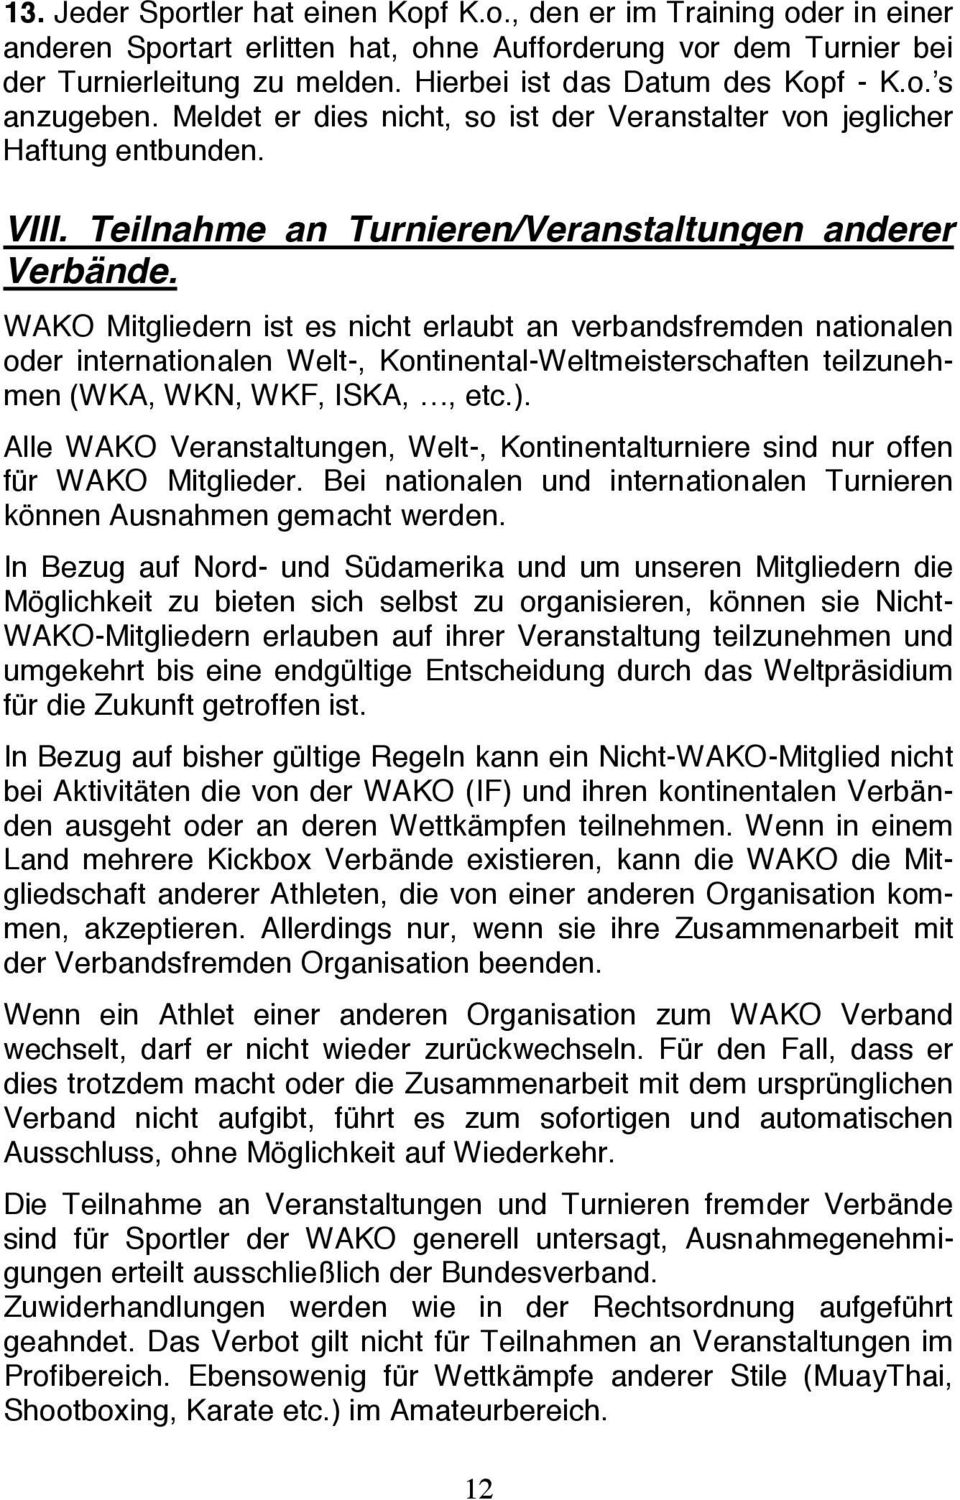 WAKO Mitgliedern ist es nicht erlaubt an verbandsfremden nationalen oder internationalen Welt-, Kontinental-Weltmeisterschaften teilzunehmen (WKA, WKN, WKF, ISKA,, etc.).